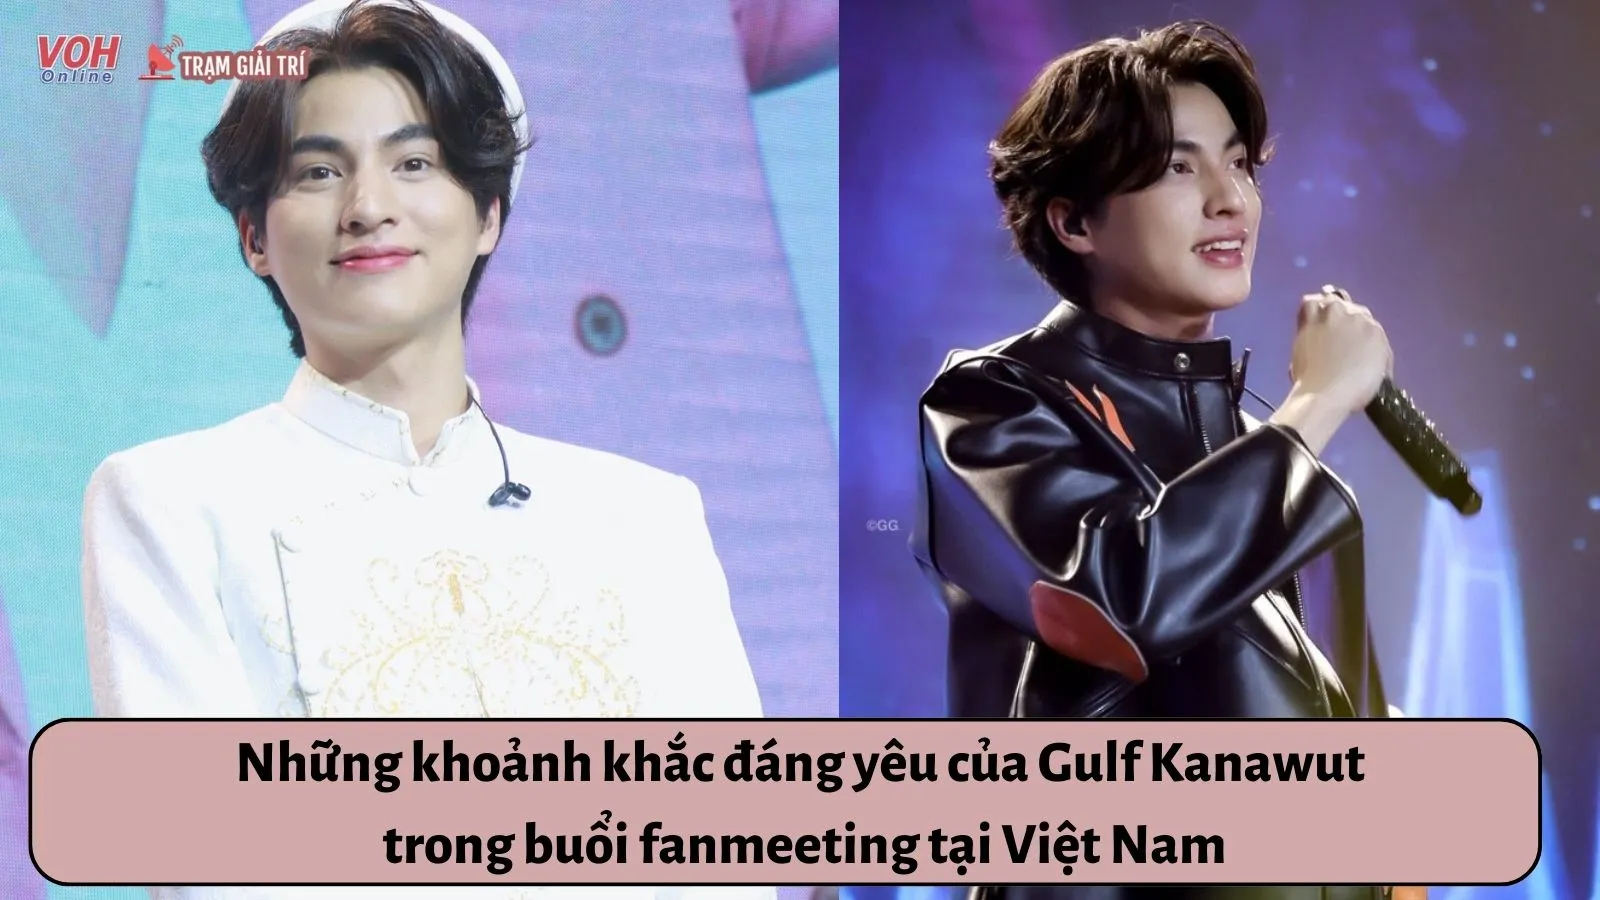 Những khoảnh khắc đáng yêu của ngôi sao đam mỹ Gulf Kanawut trong buổi fanmeeting tại Việt Nam